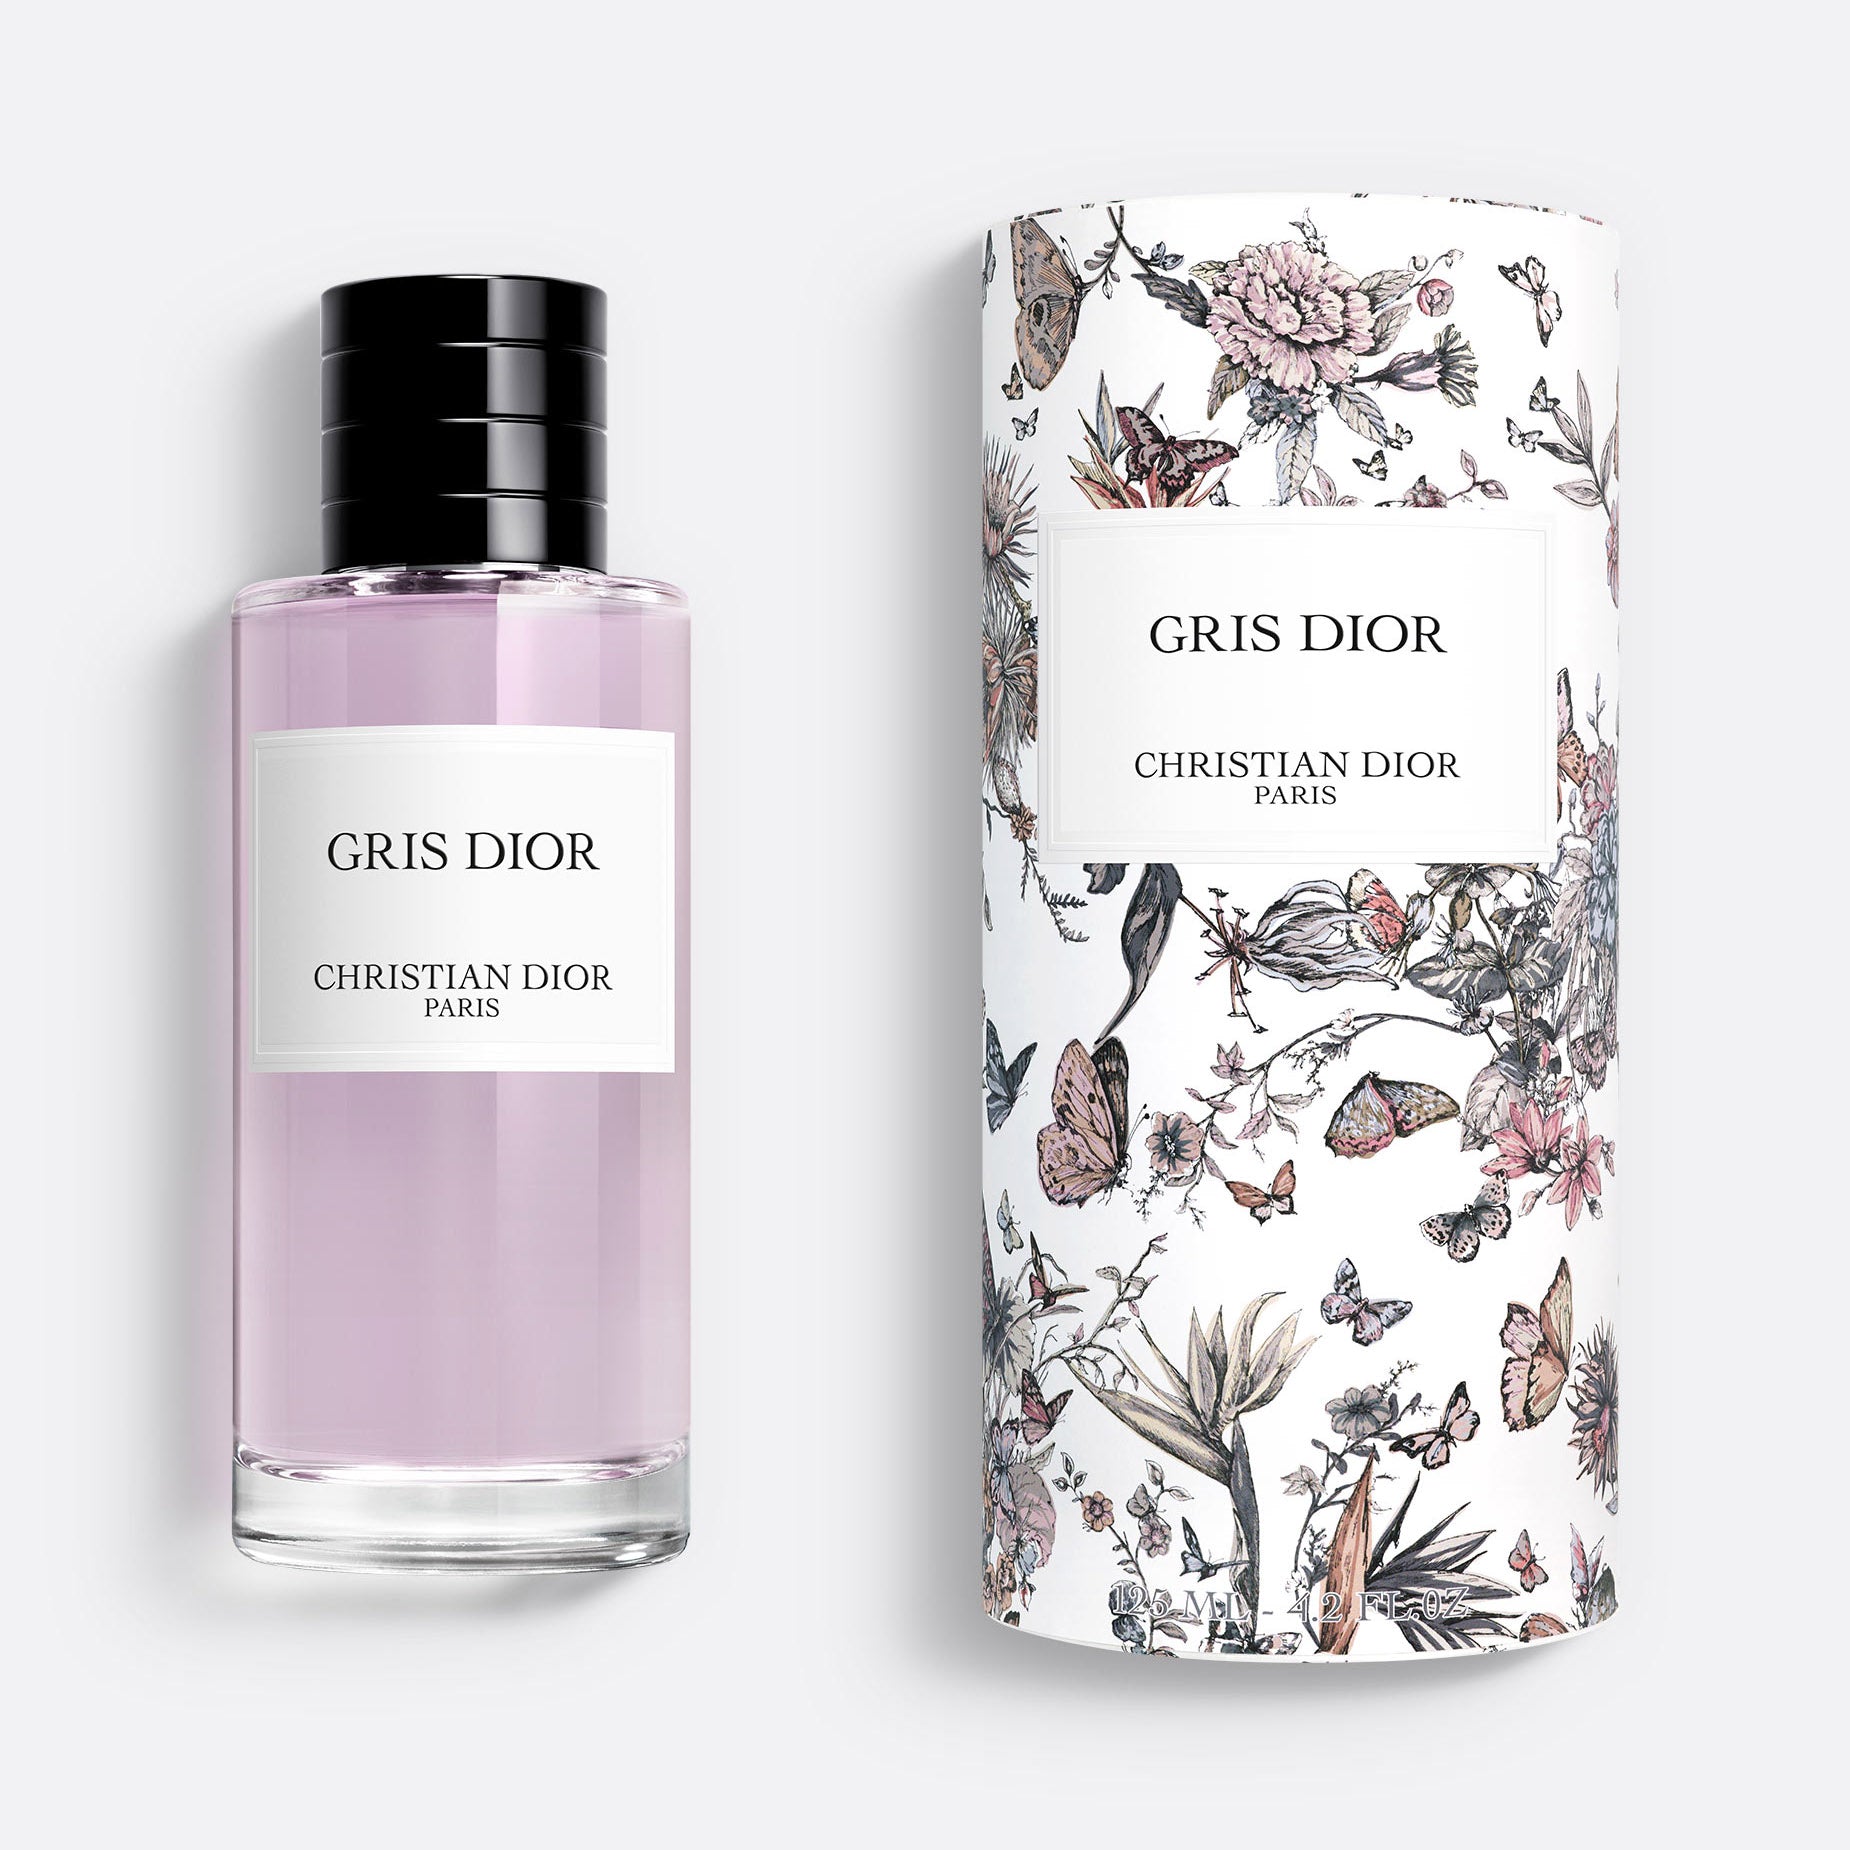 GRIS DIOR – LIMITED EDITION ~ Unisex Eau de Parfum – Floral and Chypre Notes